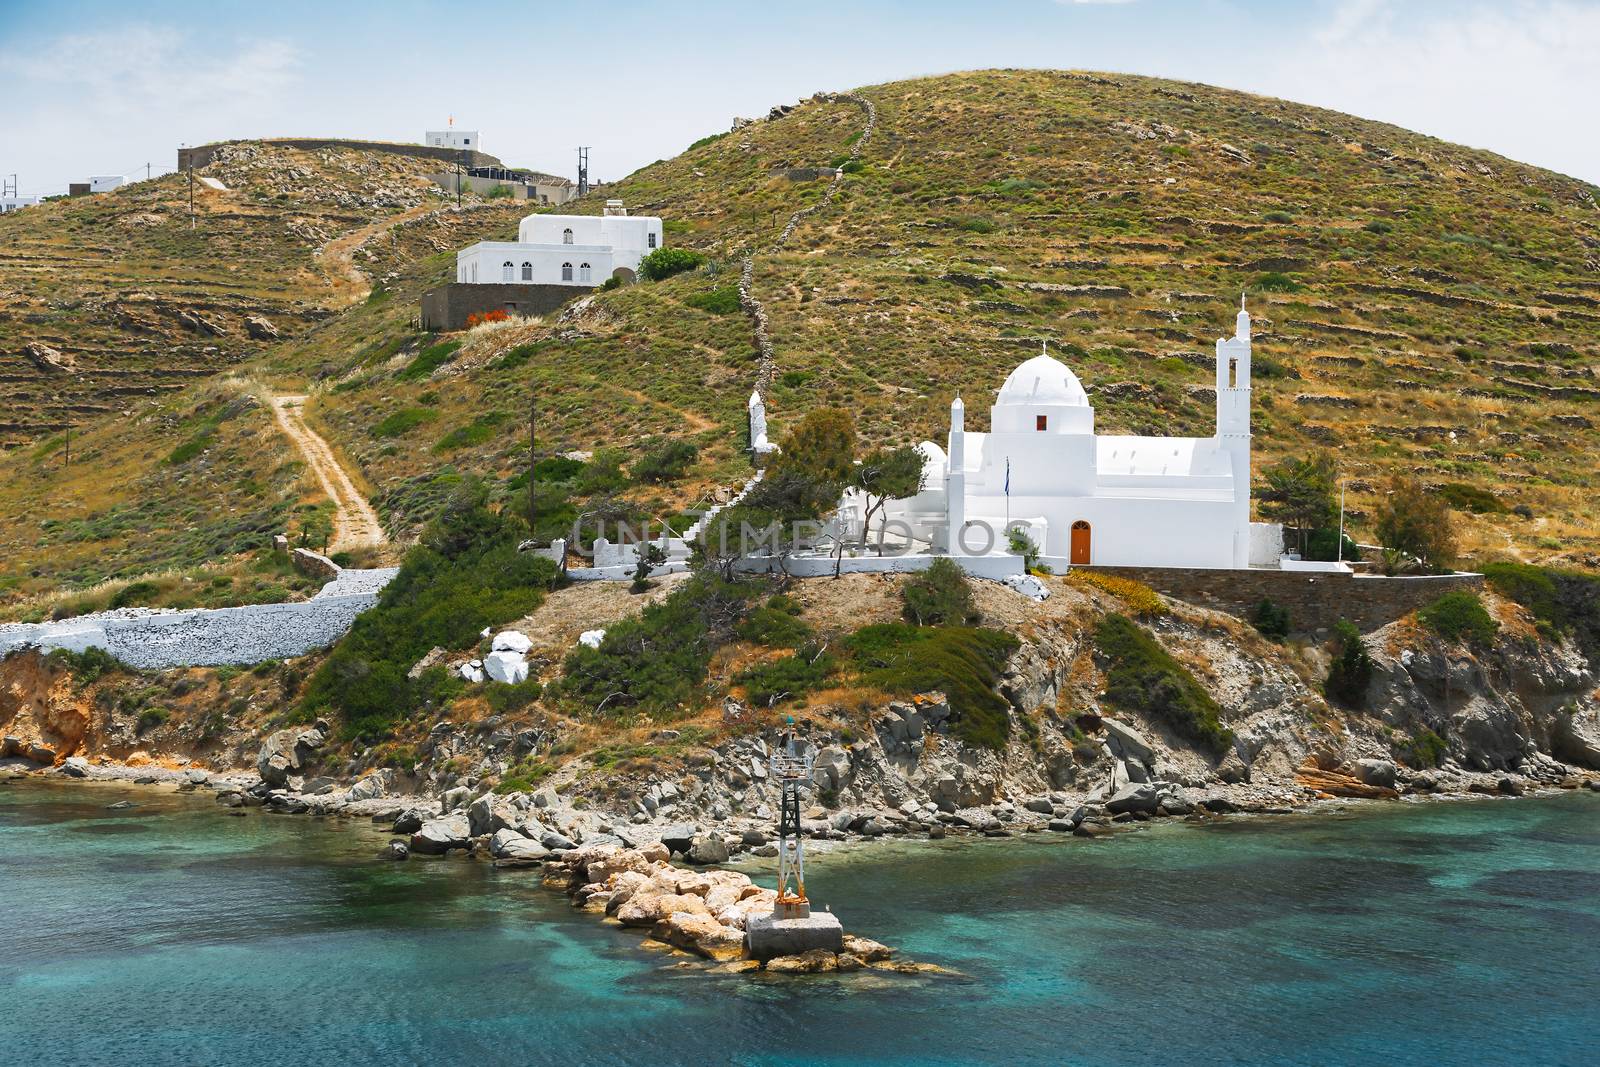 Church of Agia Irini (Saint Irene)  near the Ormos harbour, Ios, Cyclades Islands,  Greece by Slast20